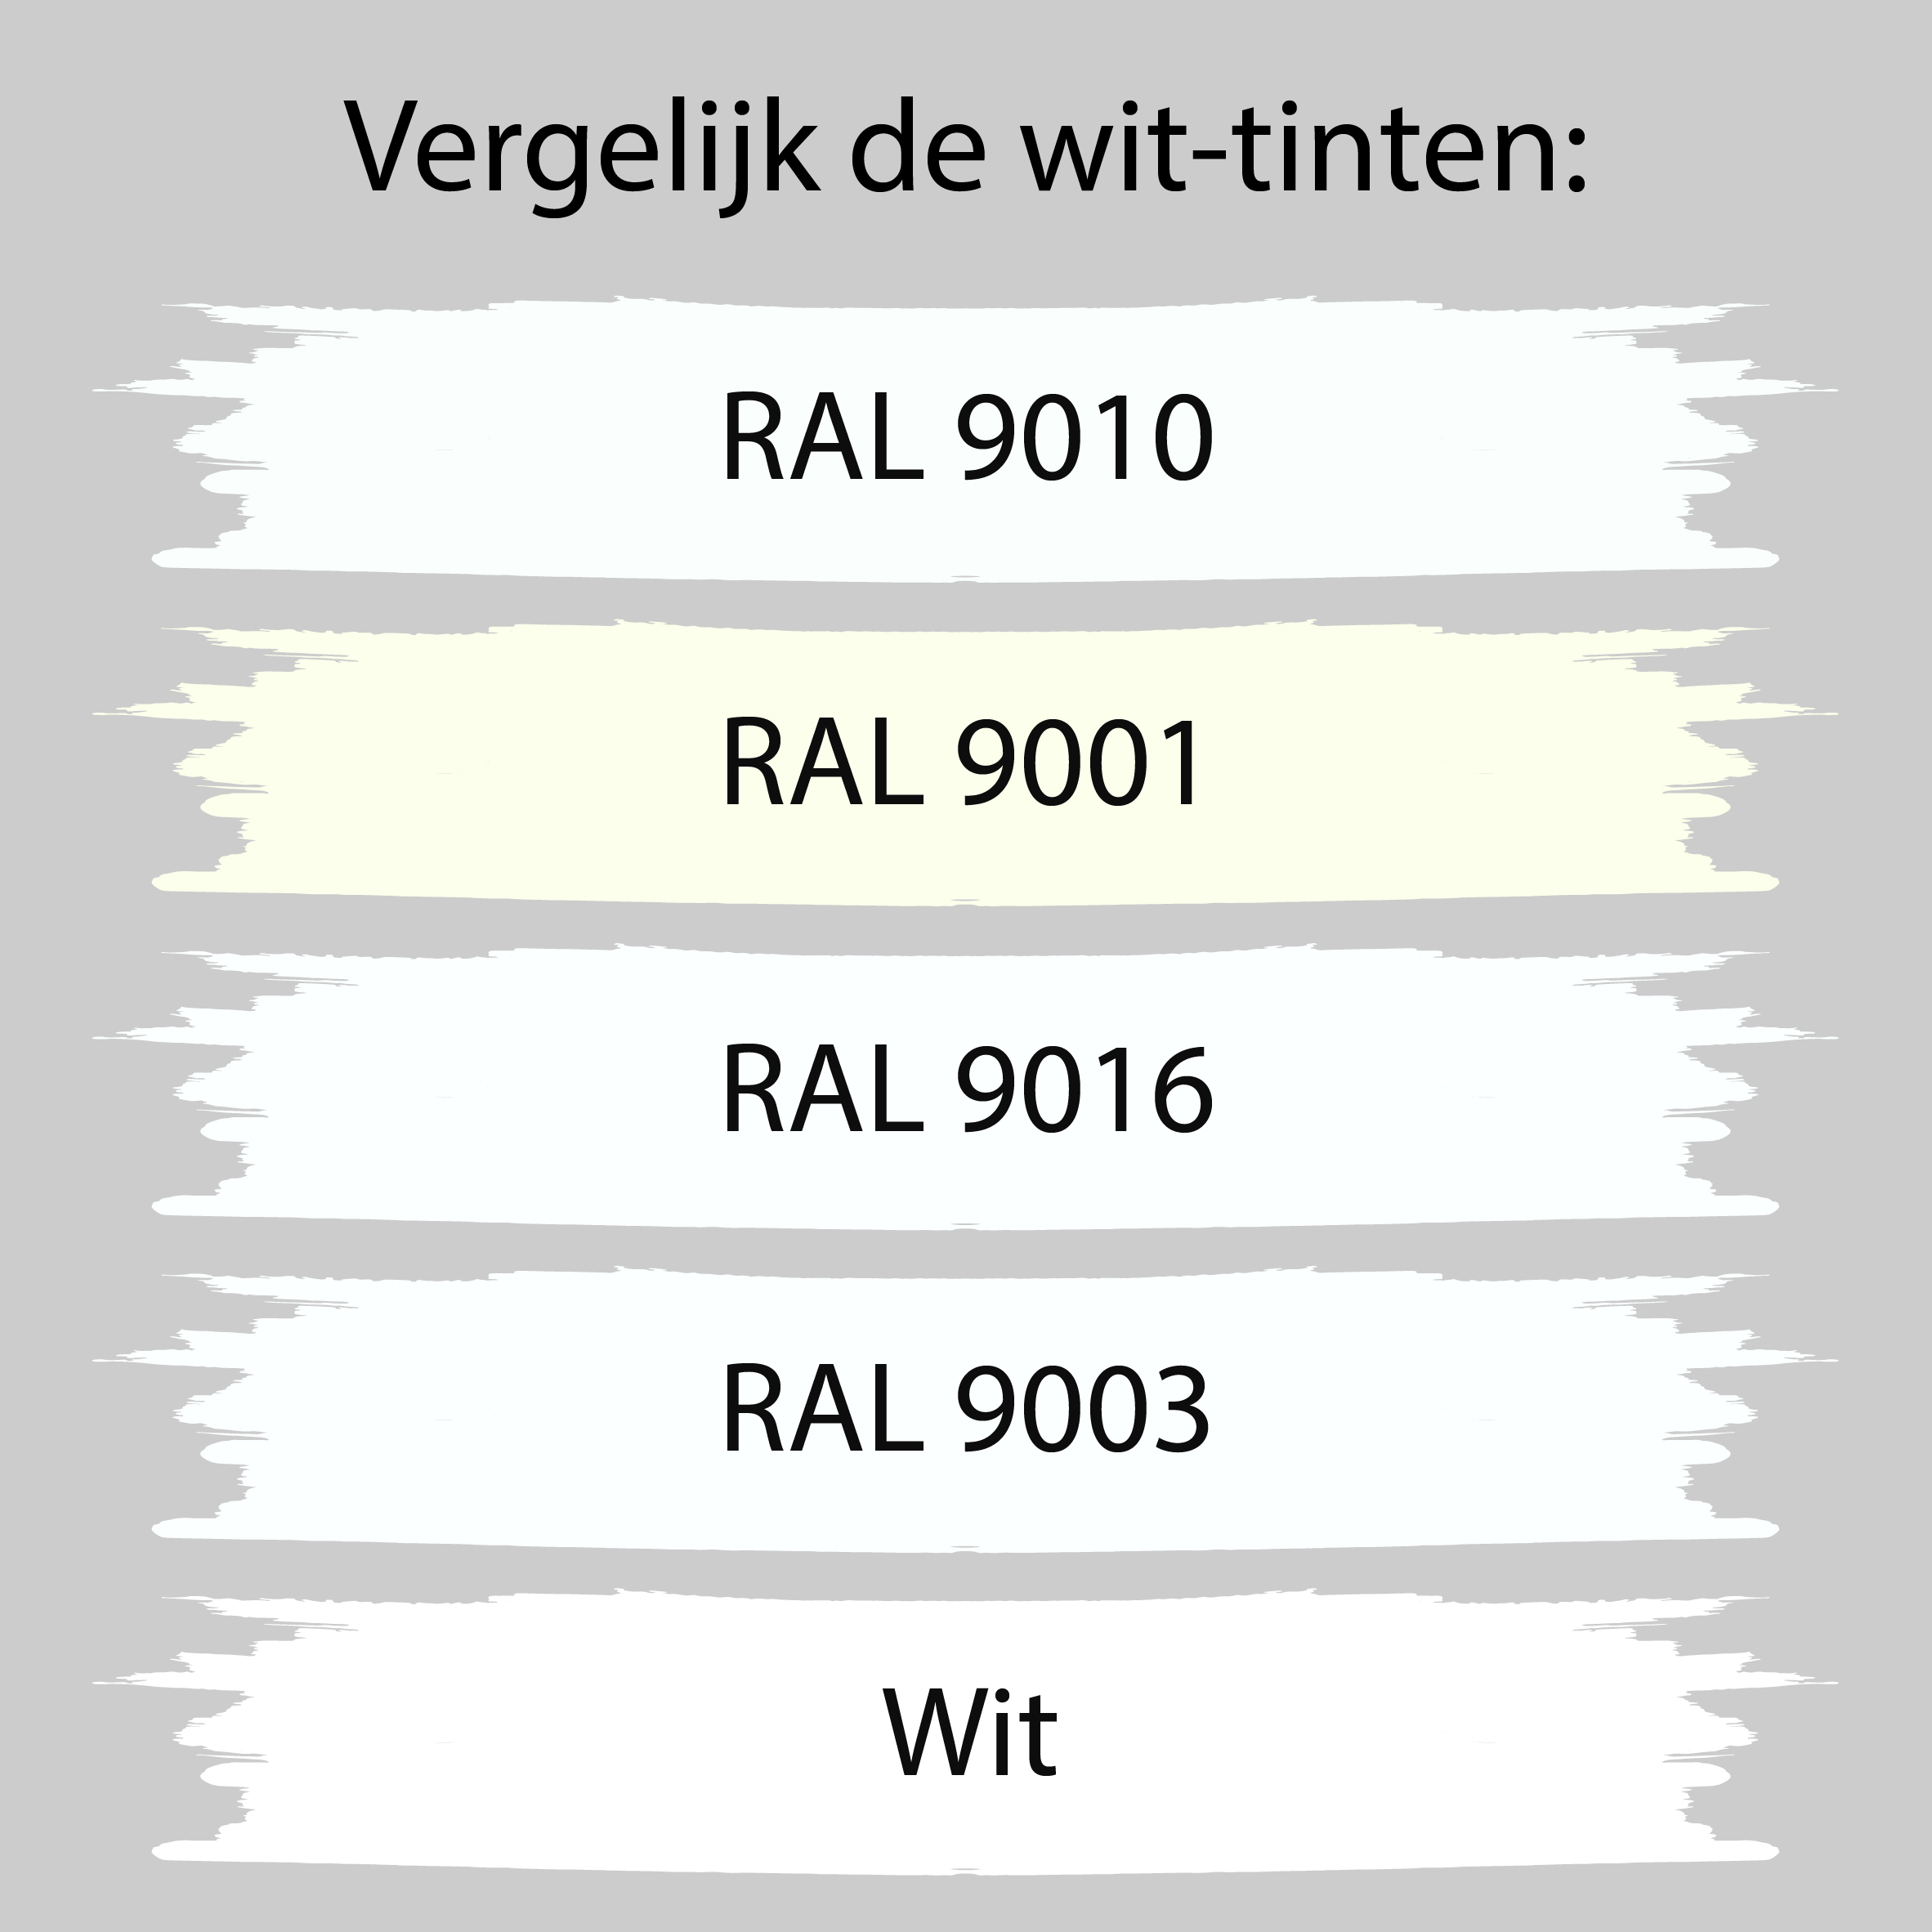 9010 verf-behang - verbouwen - WONEN.nl